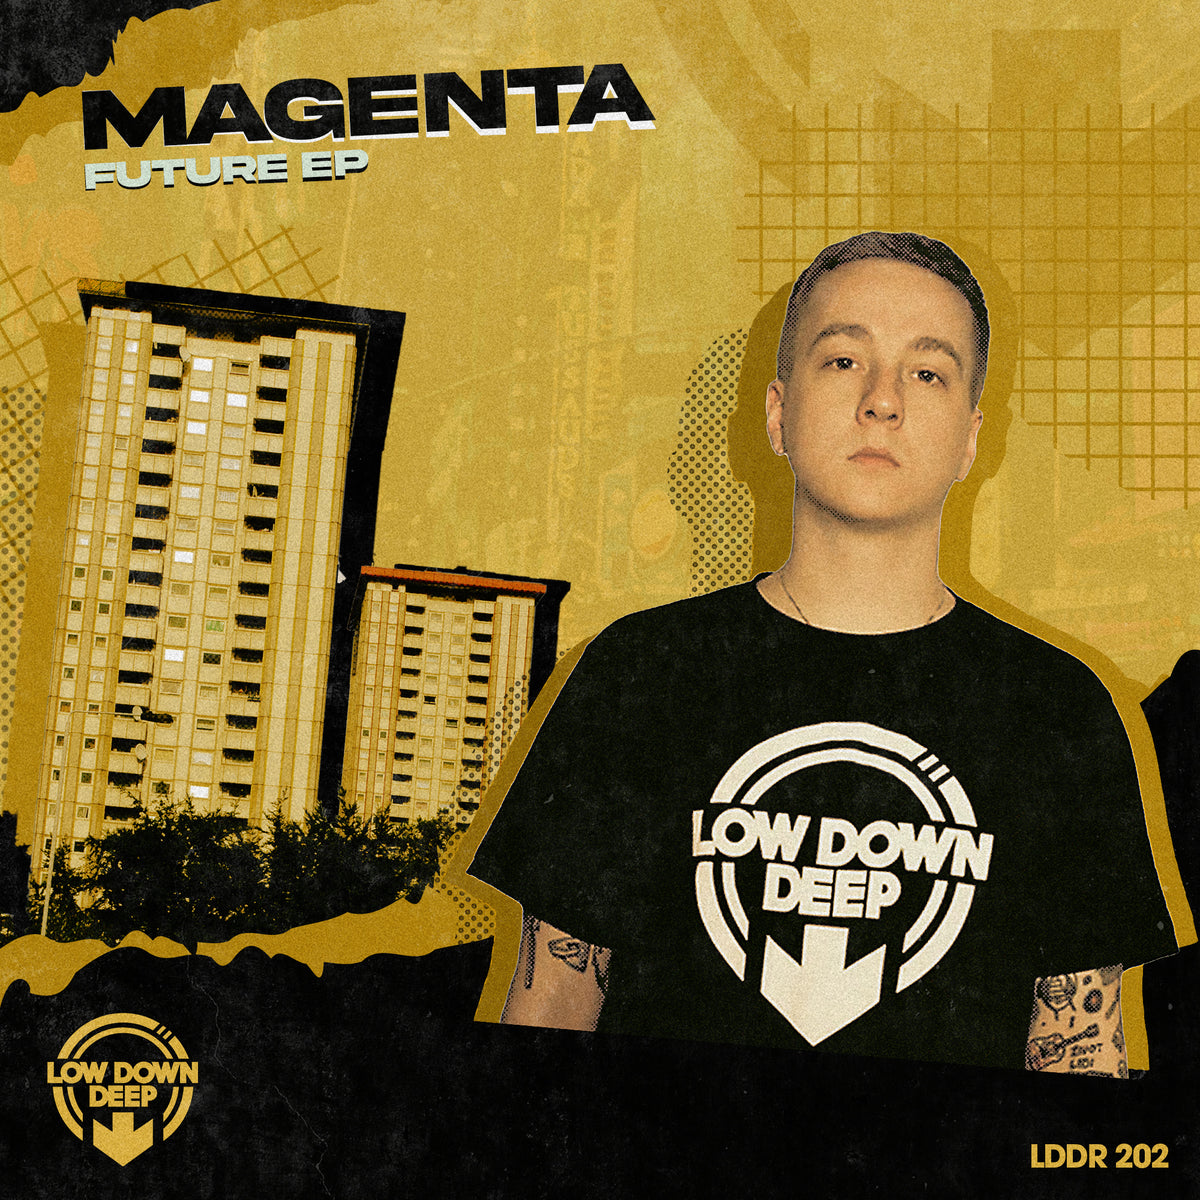 LDD 202 - Magenta 'Future EP'